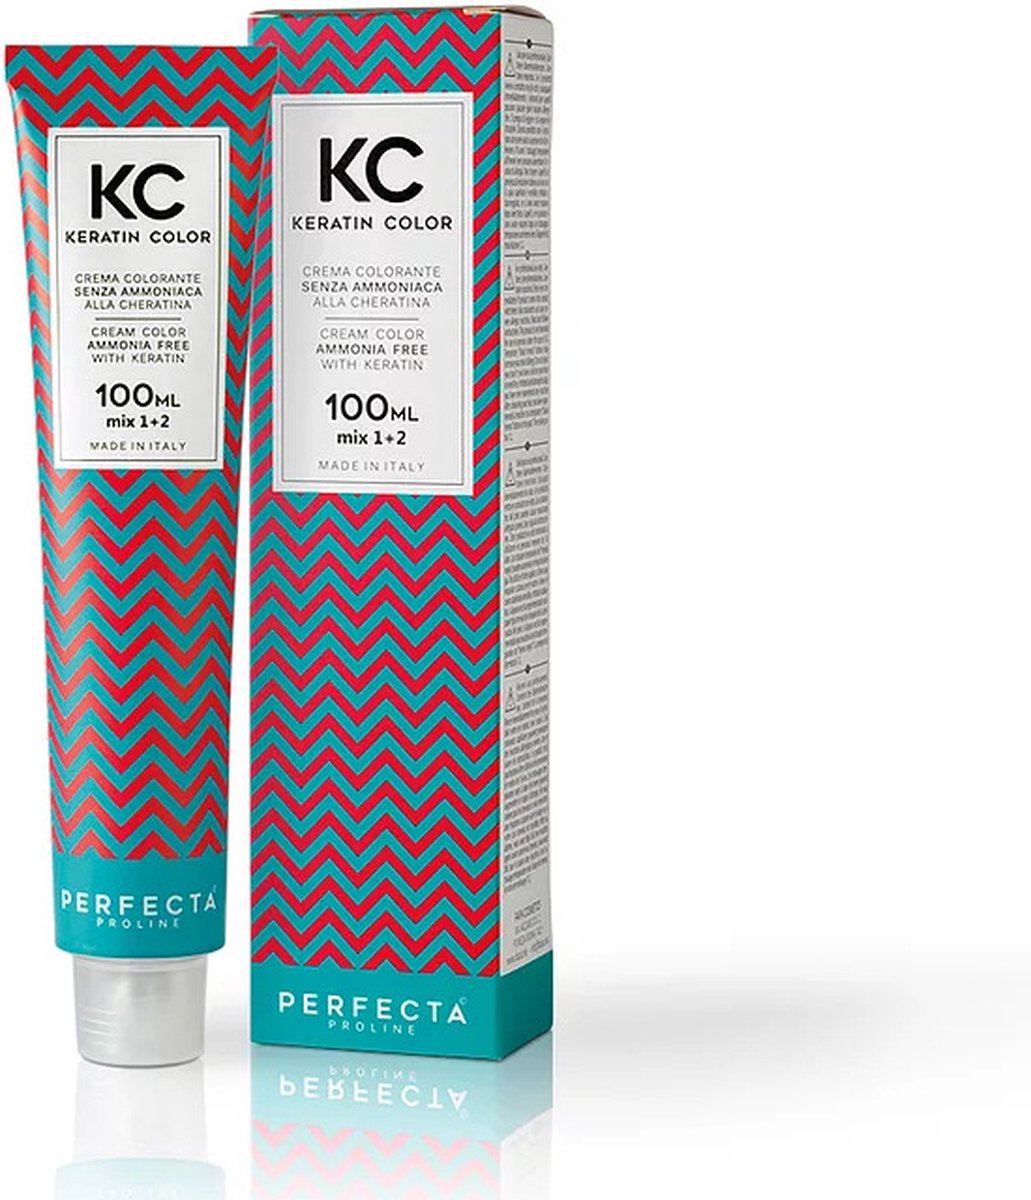 Faipa professional Kc keratin cream color 100 ml 4.54